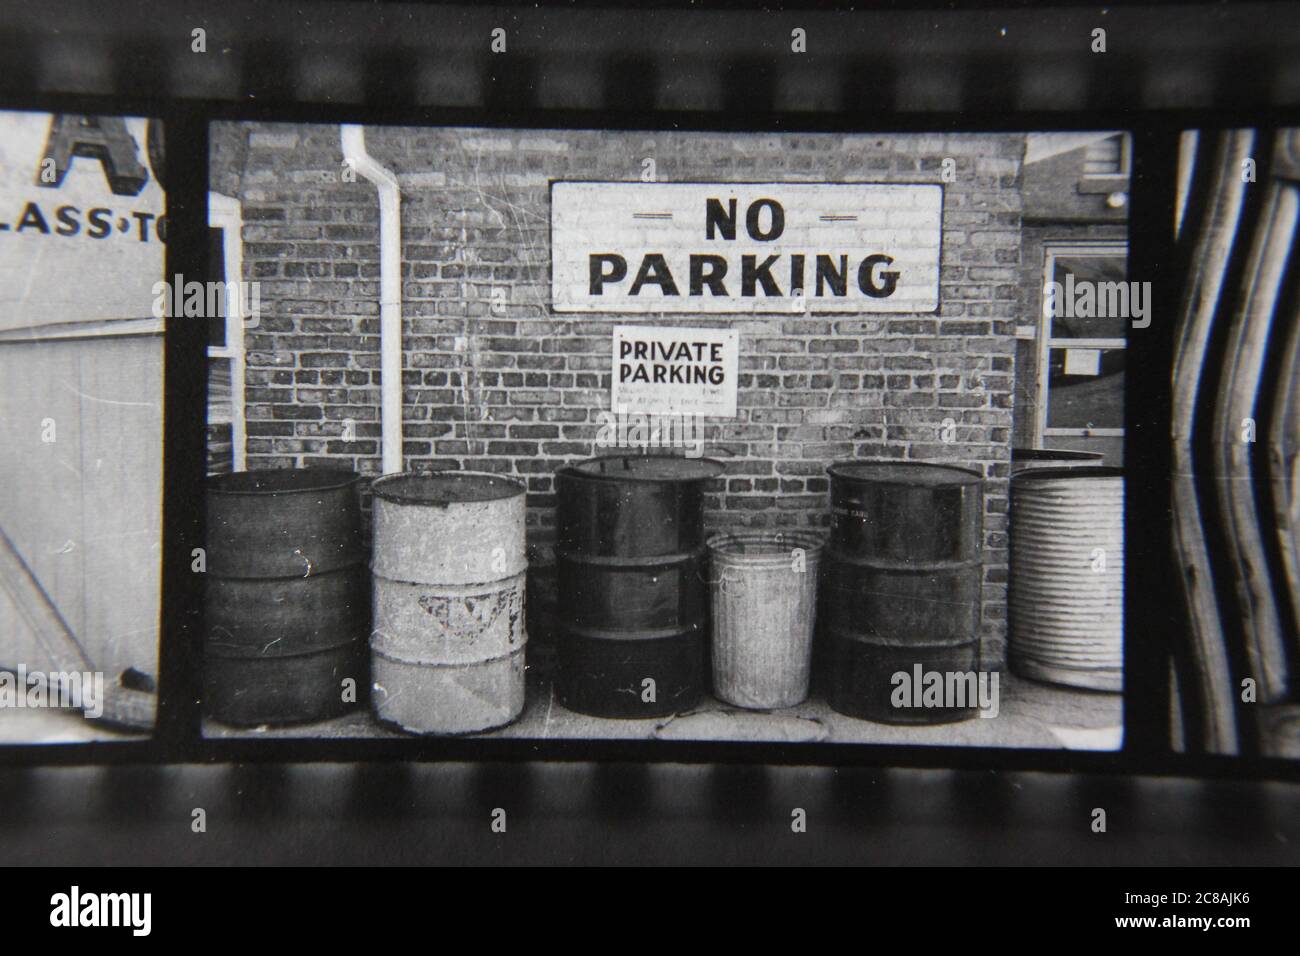 Fin 70s vintage contact imprimé noir et blanc photographie d'un tas de poubelles devant un panneau no parking. Banque D'Images